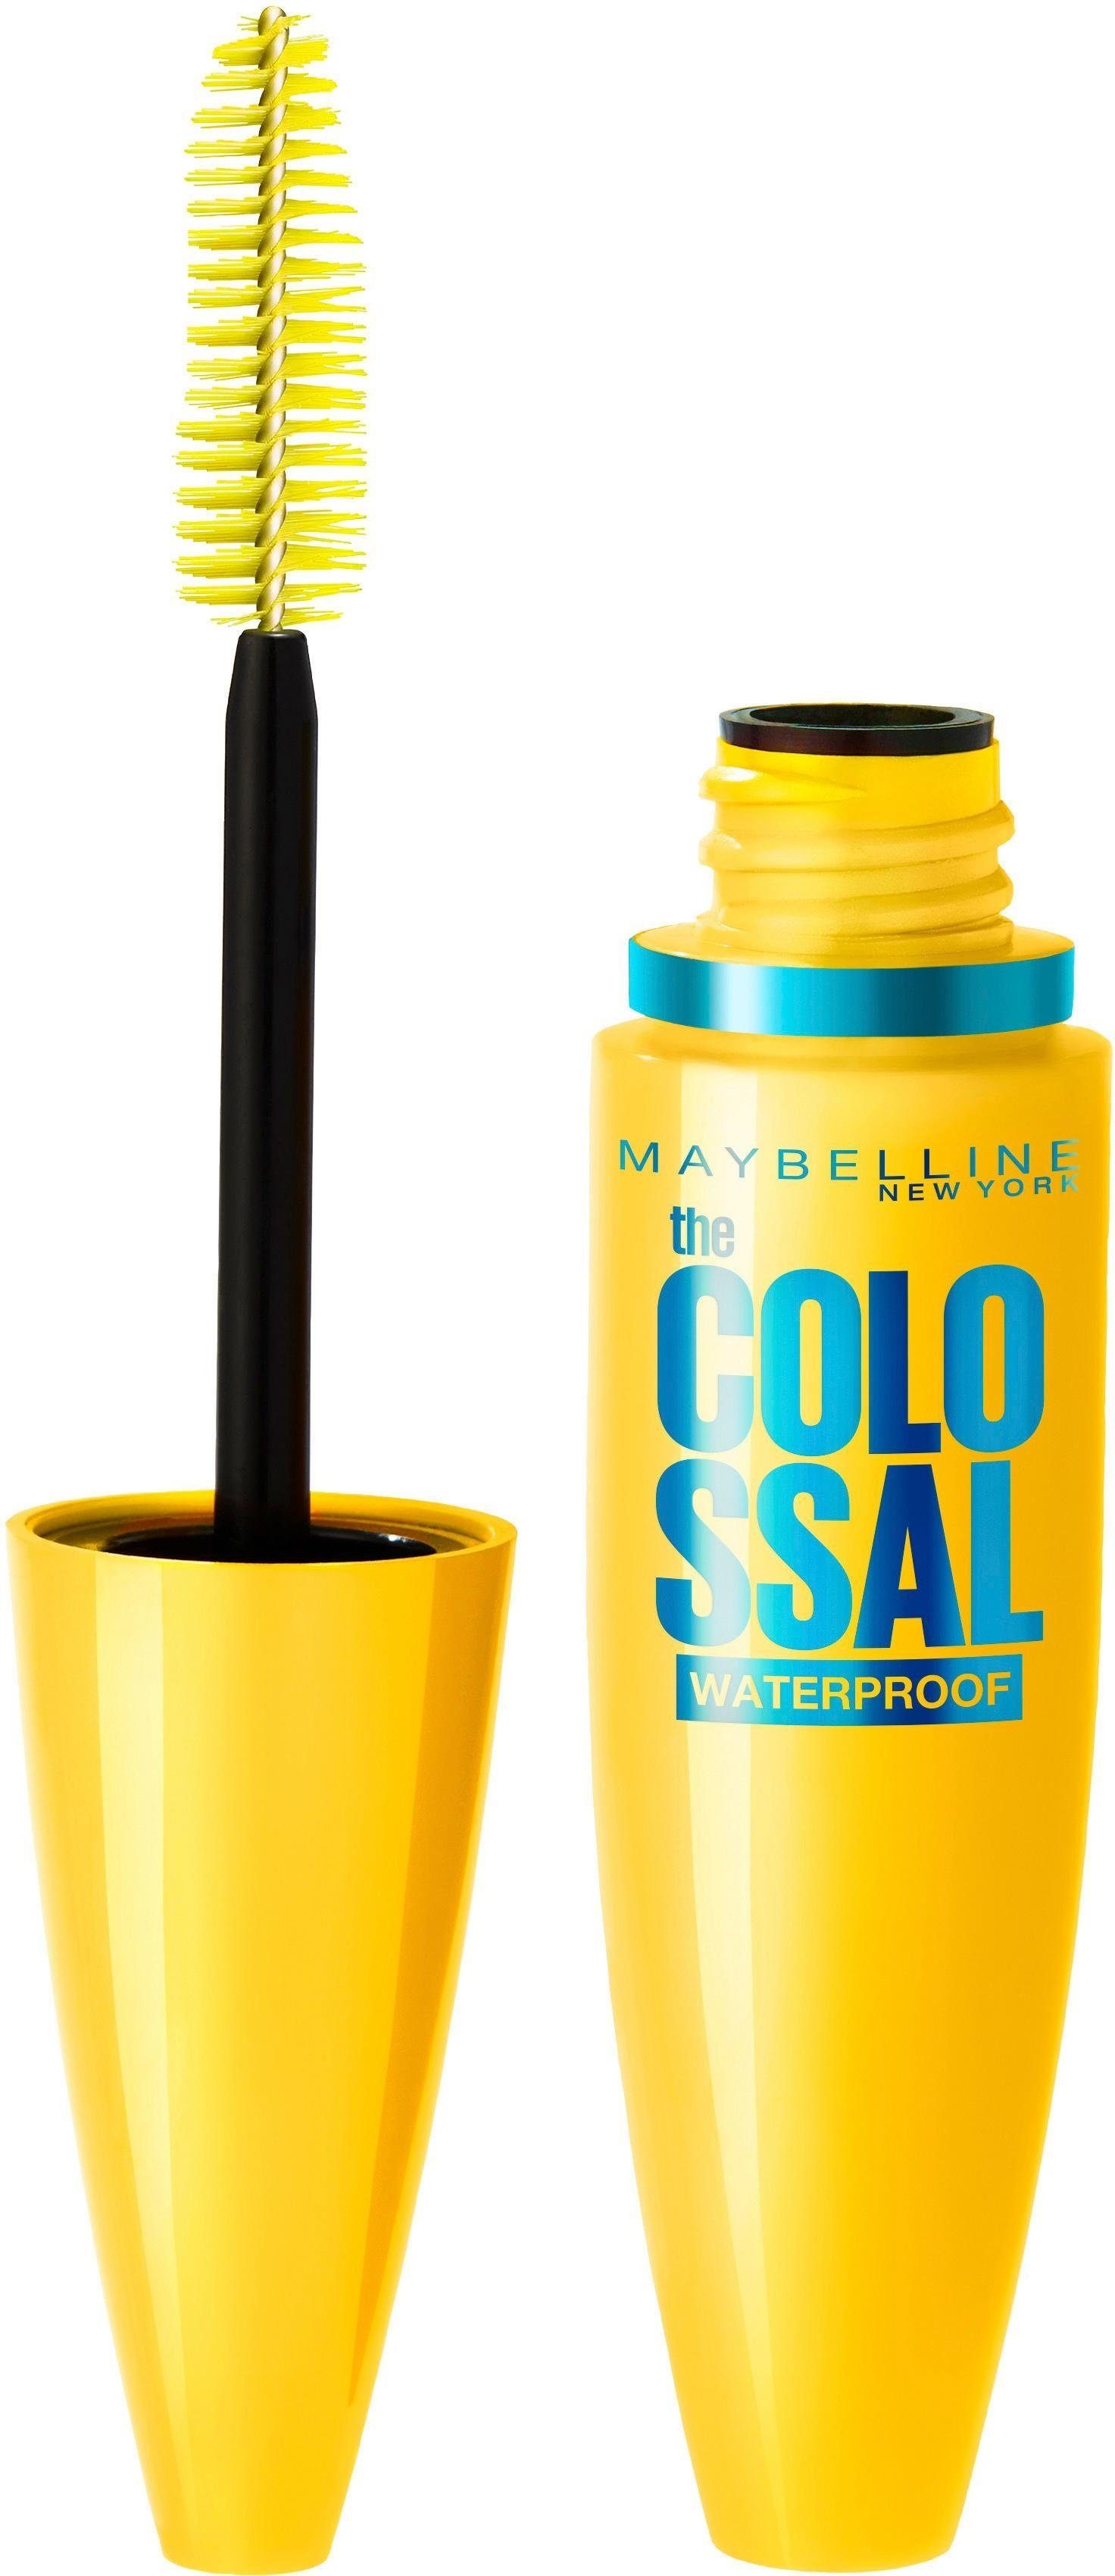 NEW Waterproof, MAYBELLINE Colossal Mascara und Collagen YORK Mit VEX Bienenwachs